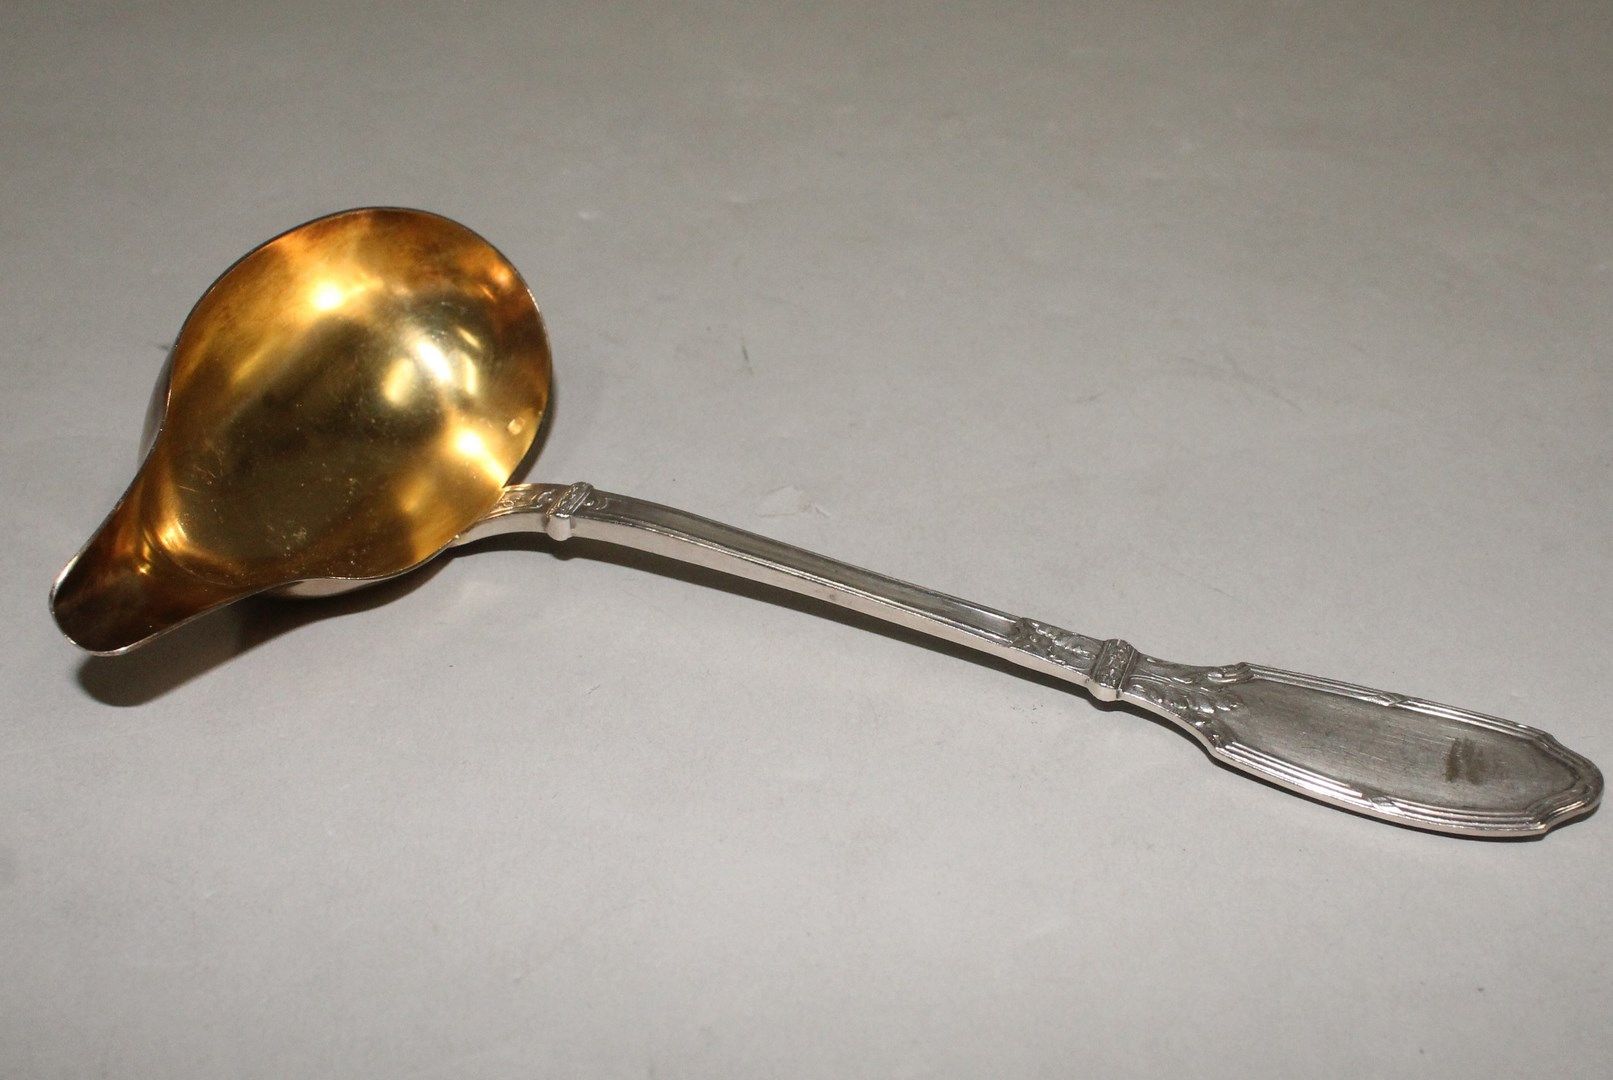 Null 路易斯-拉维内和丹佛特-查尔斯

银质酱汁勺（Minerve），勺子为vermeil材质。

Goldsmith的标志。

重量：56.90克。